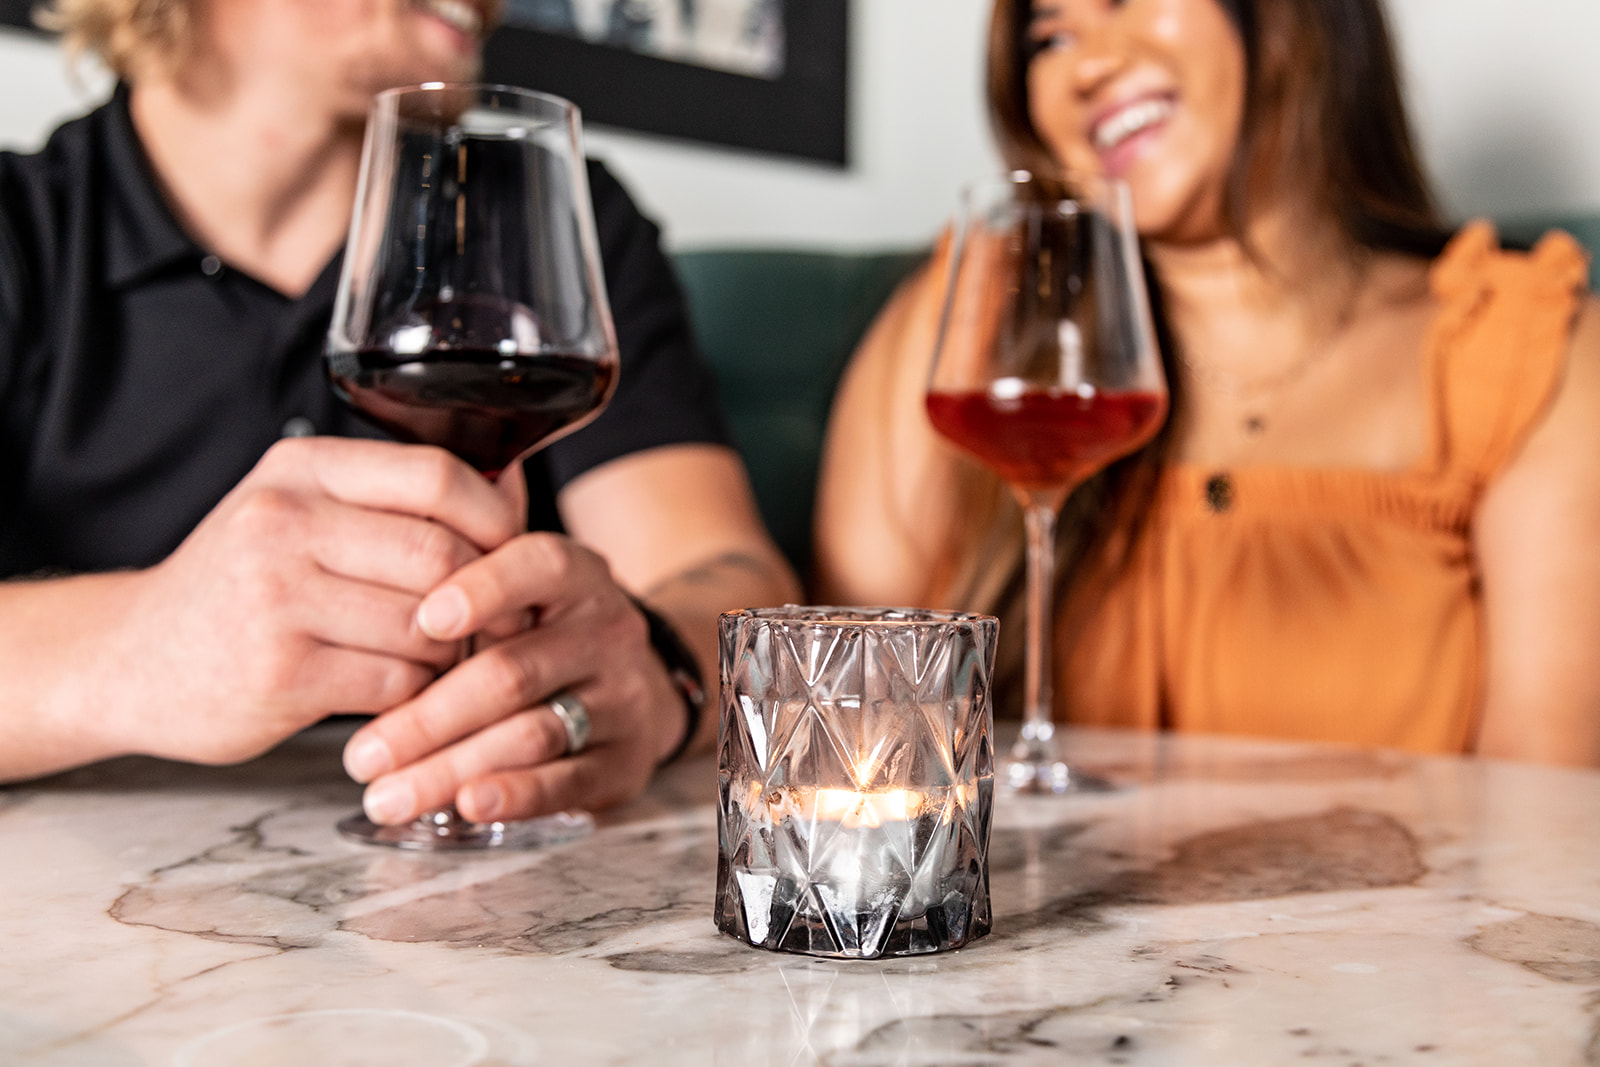 FortyEight - Wine Bar & Kitchen - Wine Bar, Restaurant, Wine Bar